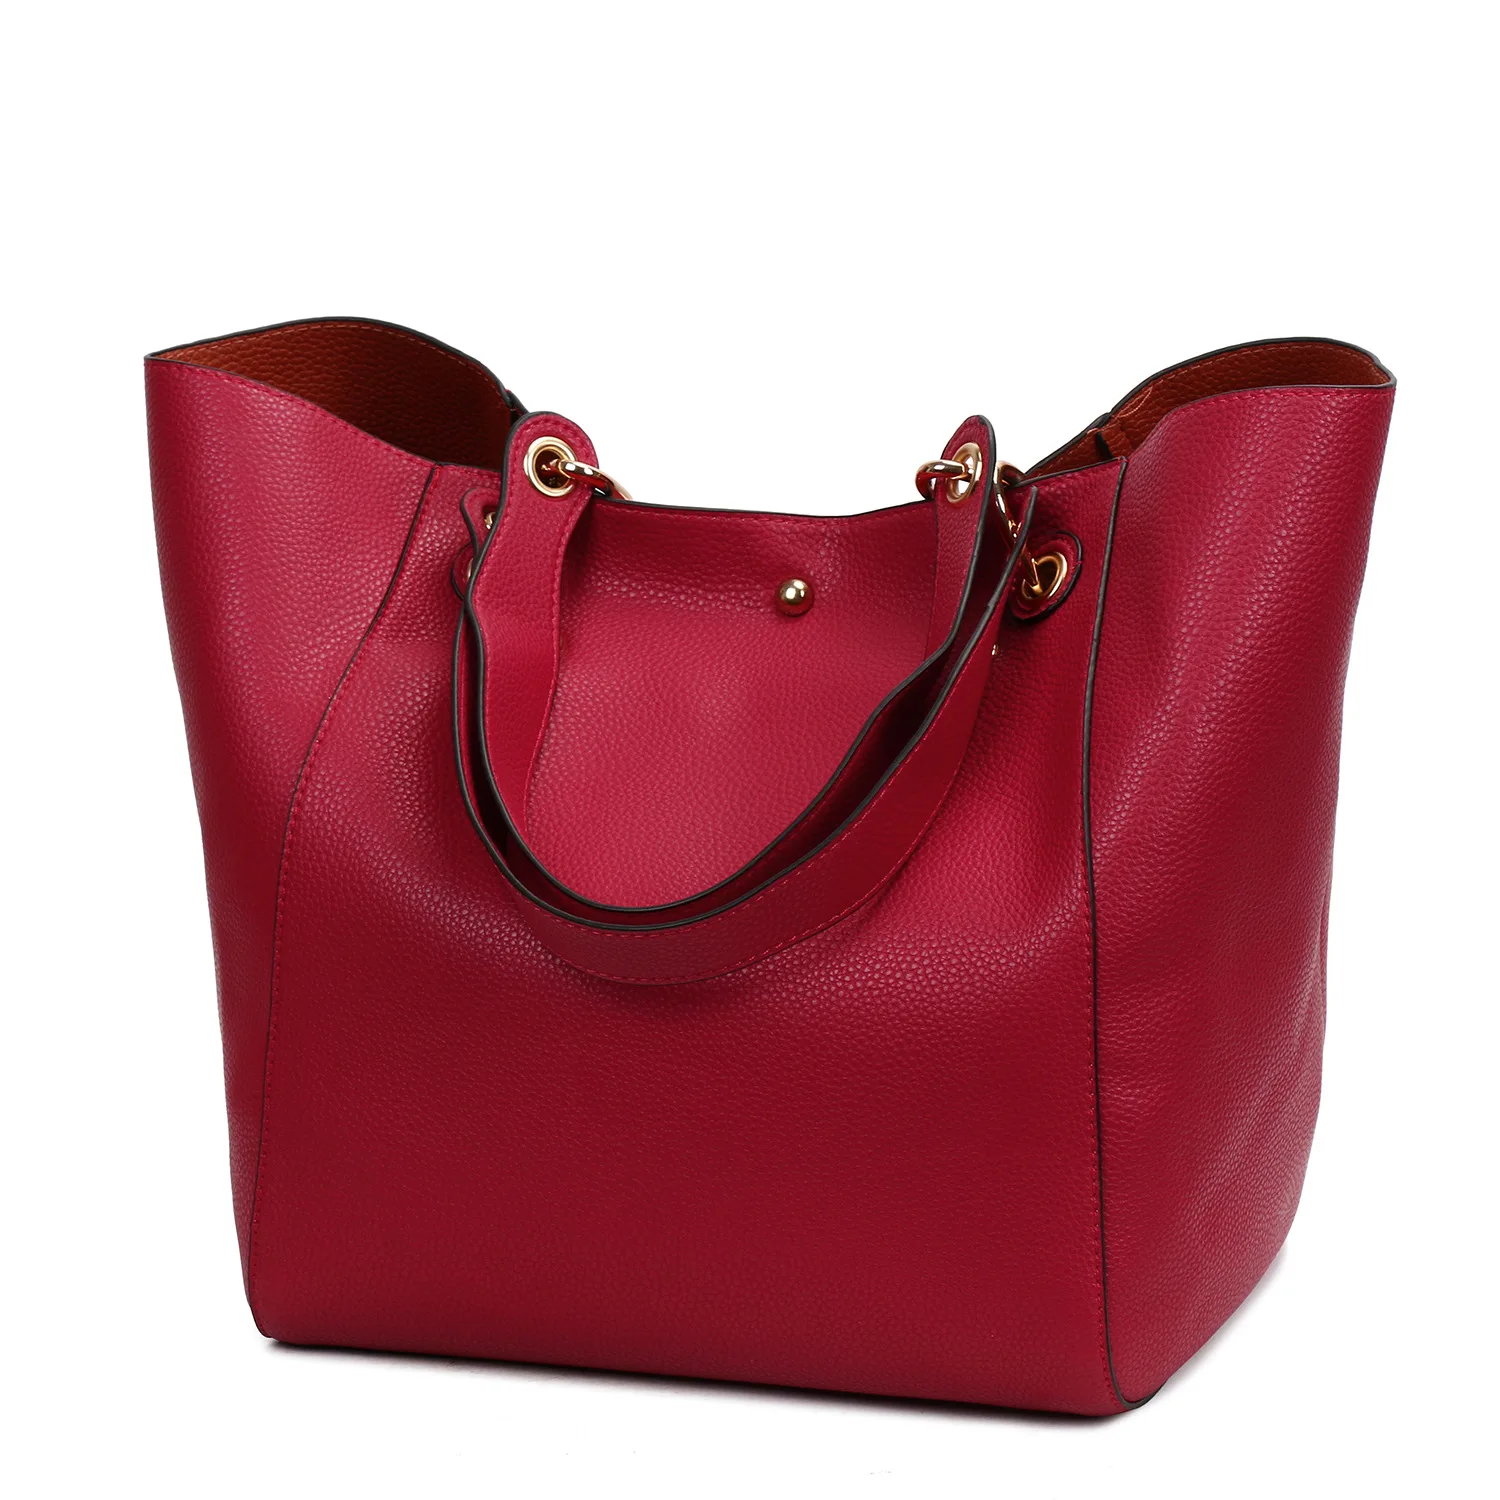 BERAGHINI из искусственной кожи в форме ведерка композитные сумки известный бренд дизайнерские женские сумки высокого качества сумка через плечо - Цвет: Красный